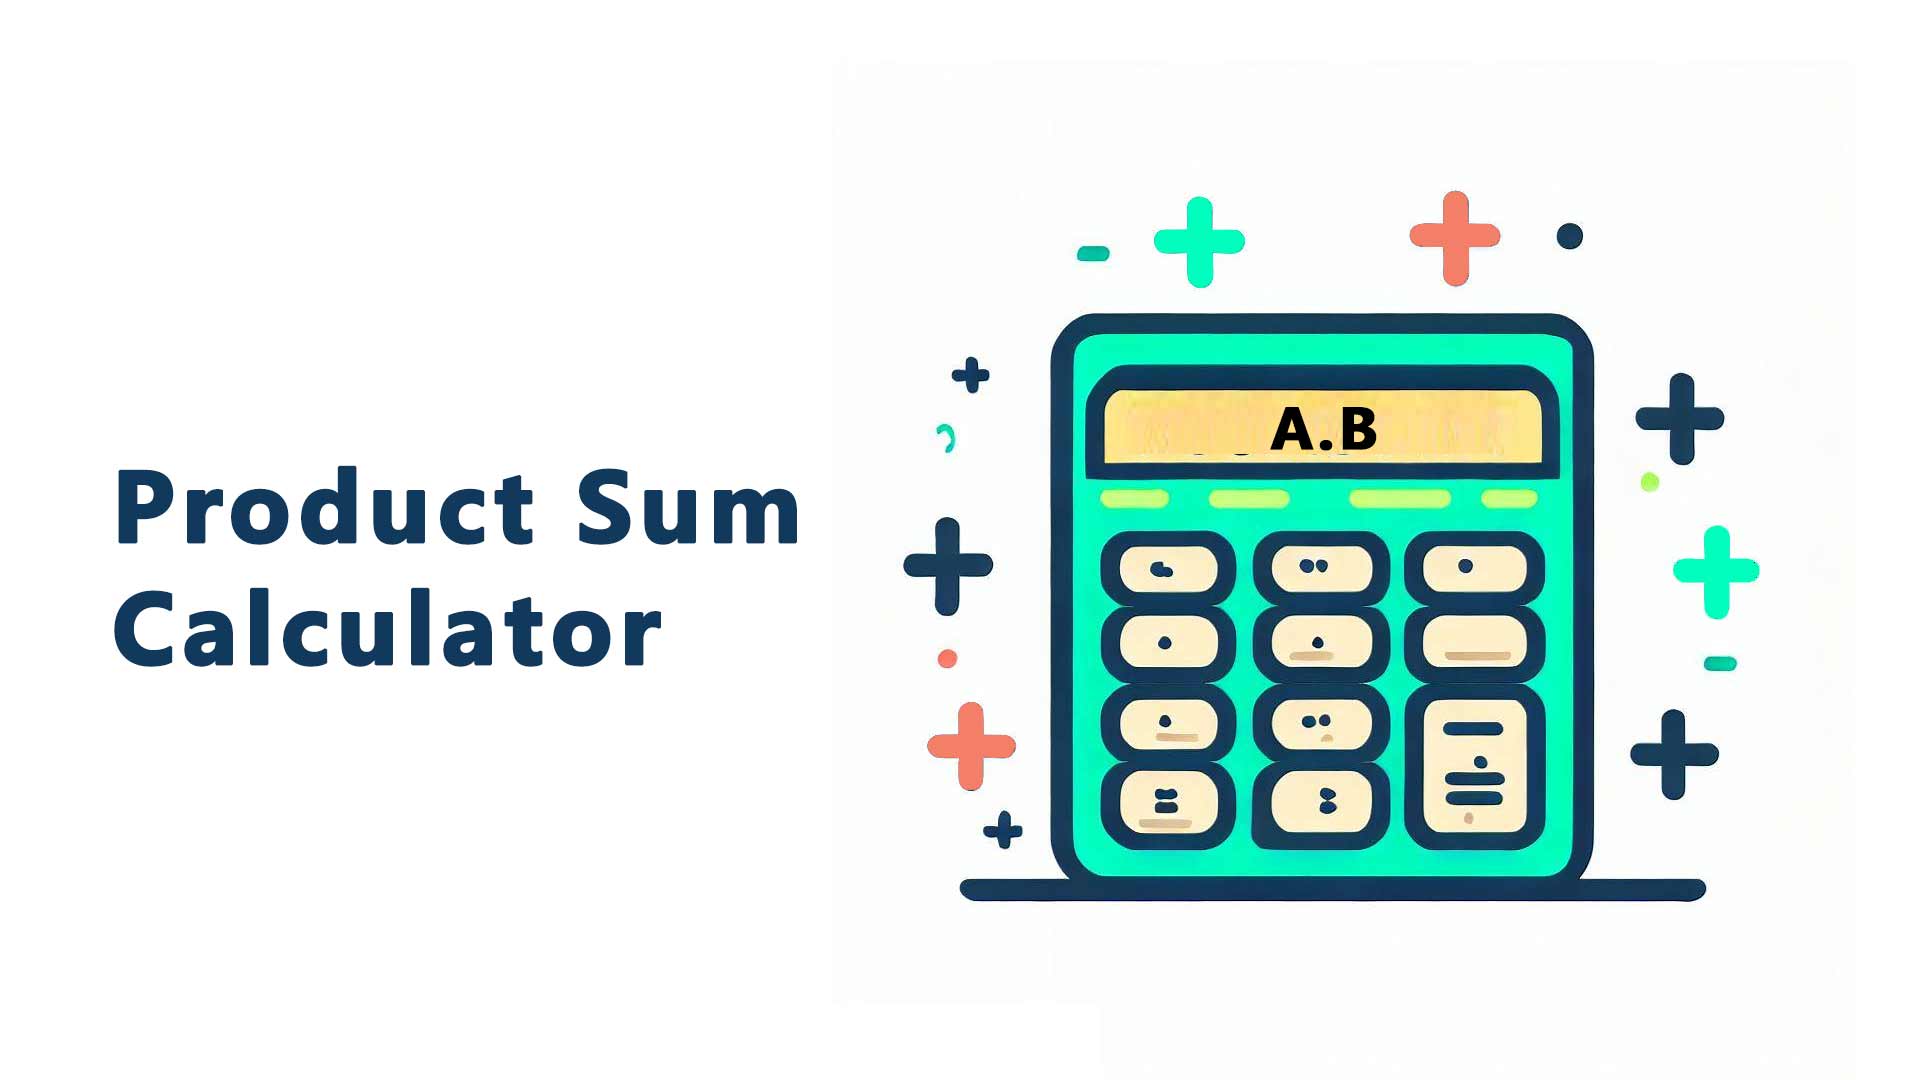 Product Sum Calculator